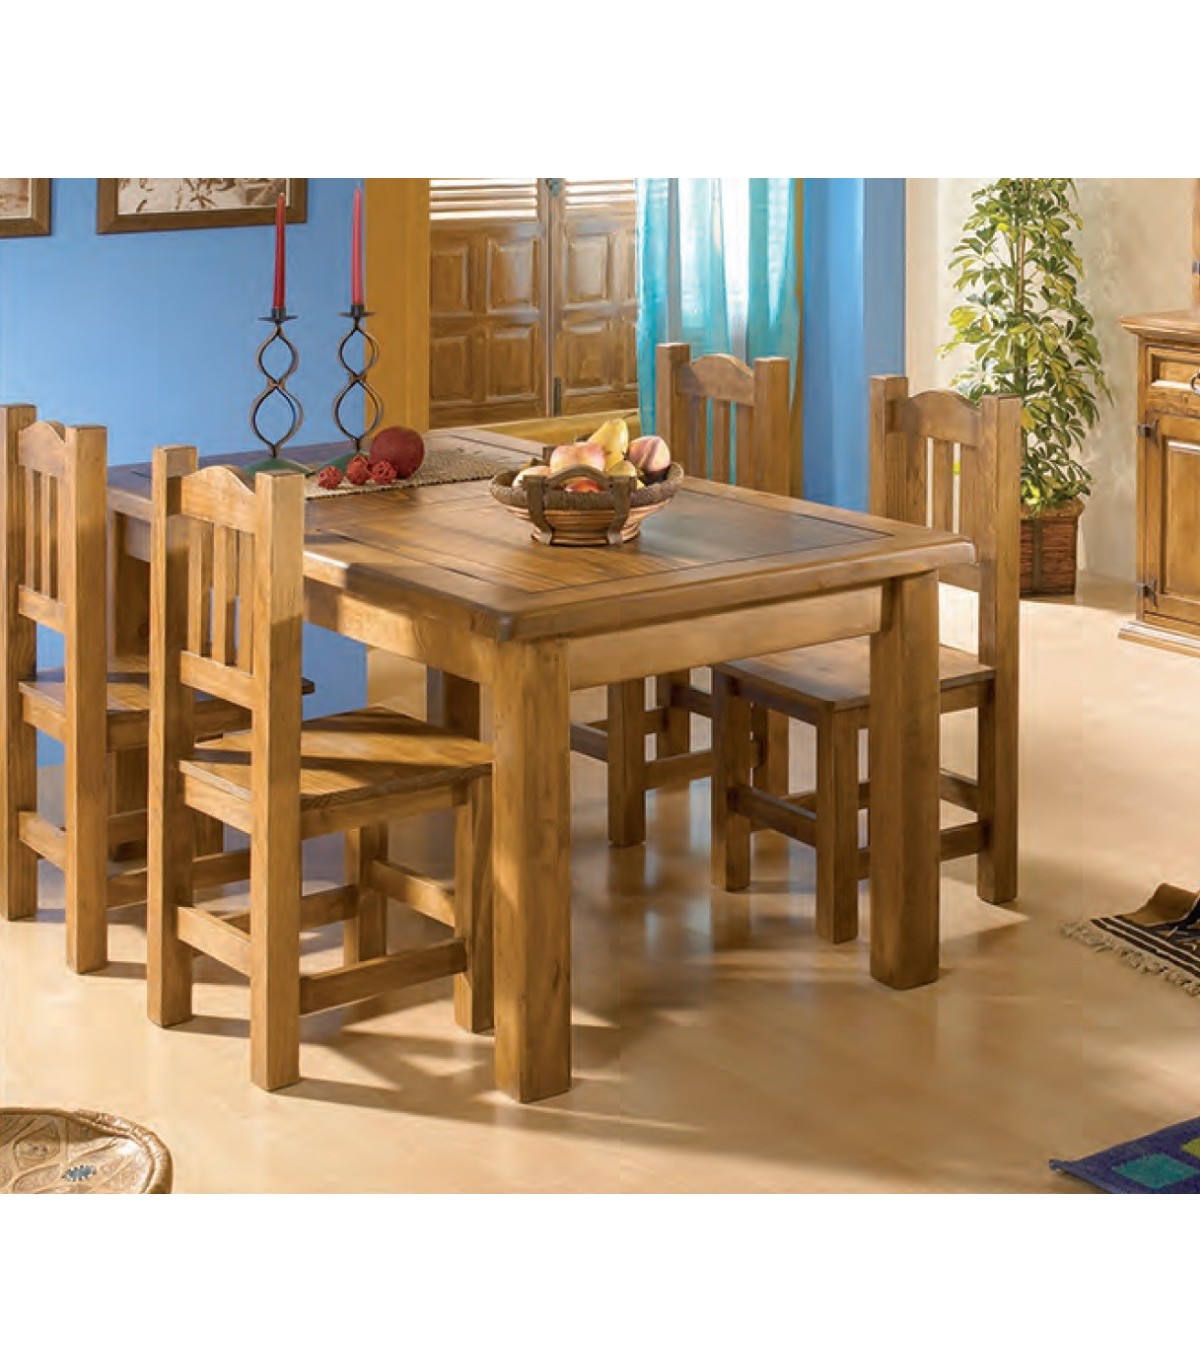 Salón comedor con aparador bajo y alto, mesa de comedor y sillas